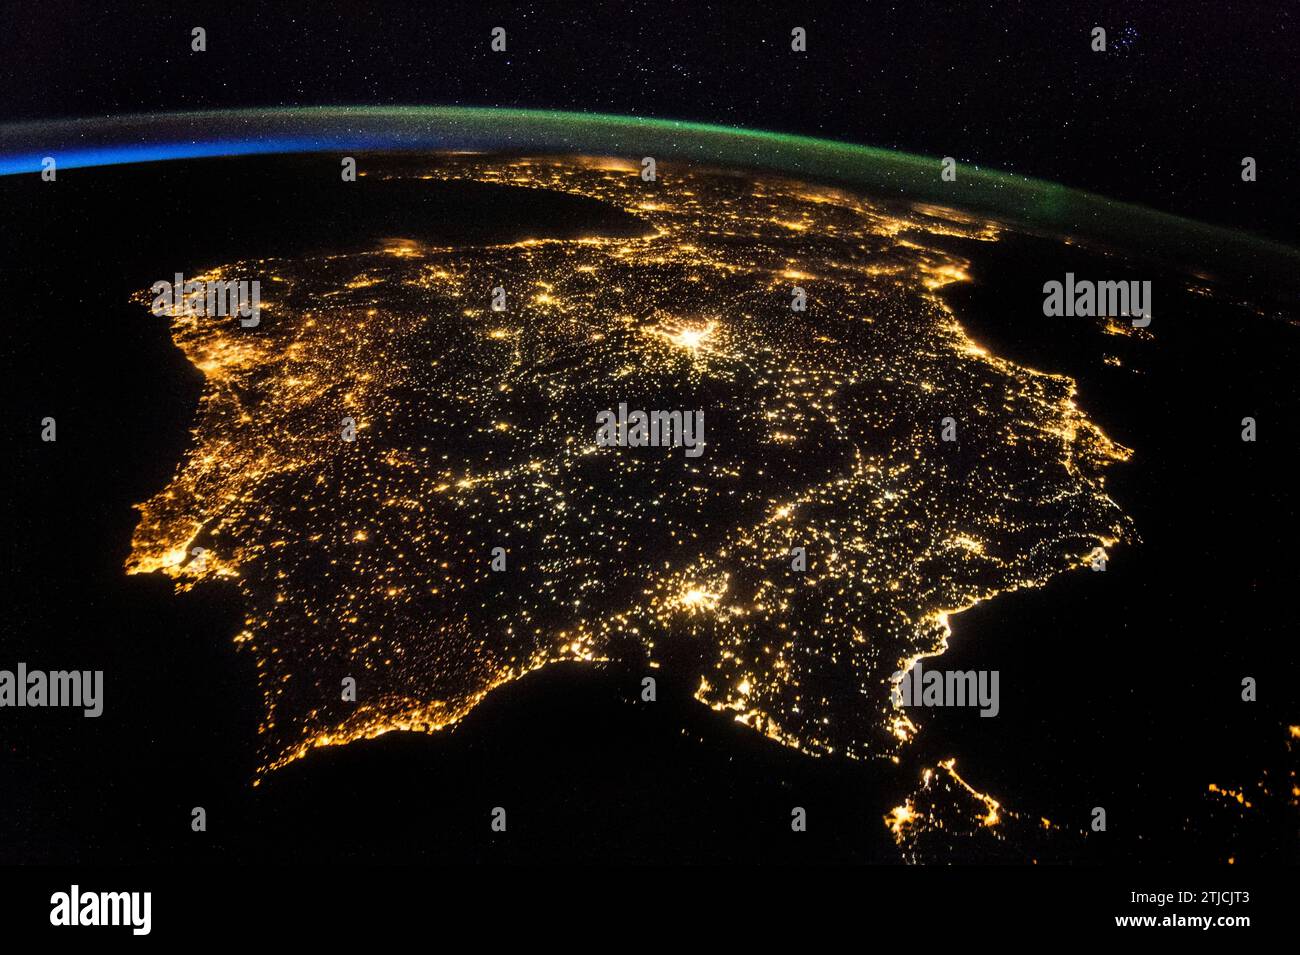 Iberische Halbinsel in der Nacht, aufgenommen von der Internationalen Raumstation, 26. Juli 2014. Eines der Besatzungsmitglieder der Expedition 40 an Bord der Internationalen Raumstation nahm am 26. Juli 2014 dieses frühe Abendfoto der gesamten Iberischen Halbinsel (Spanien, Portugal und Andorra) auf. Oben im Bild ist ein Teil Frankreichs zu sehen, unten die Straße von Gibraltar, unten ein sehr kleiner Teil Marokkos in der unteren rechten Ecke. Eine optimierte Version eines Originalbildes der NASA / Credit: NASA Stockfoto